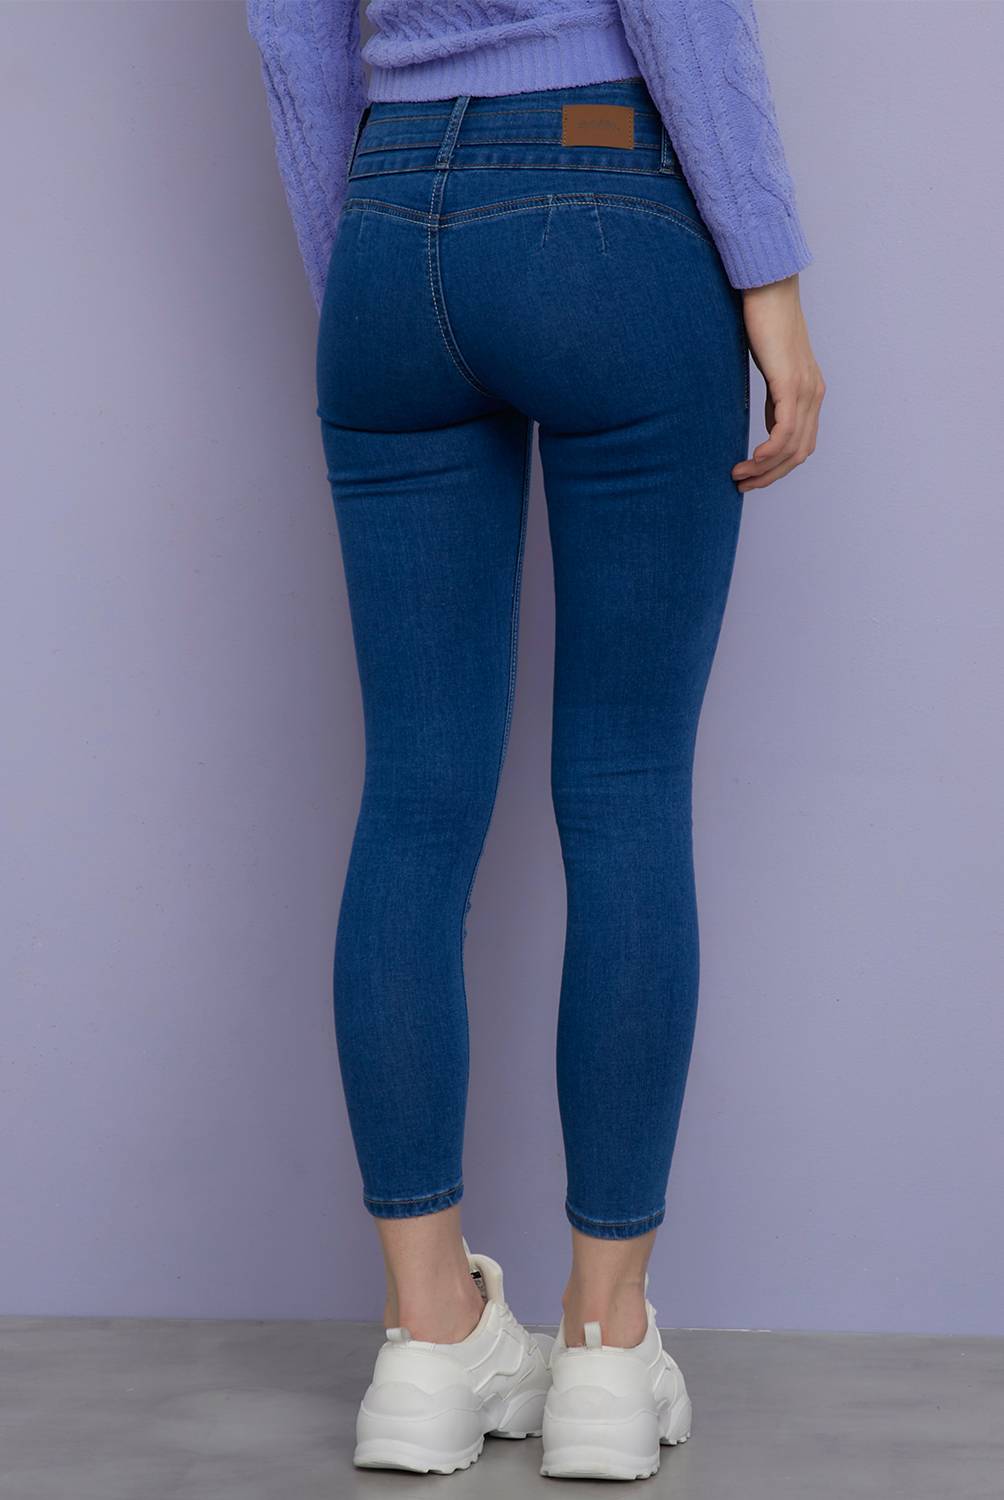 SYBILLA - Jeans Skinny Push Up Tiro Alto Denim Mujer Sybilla